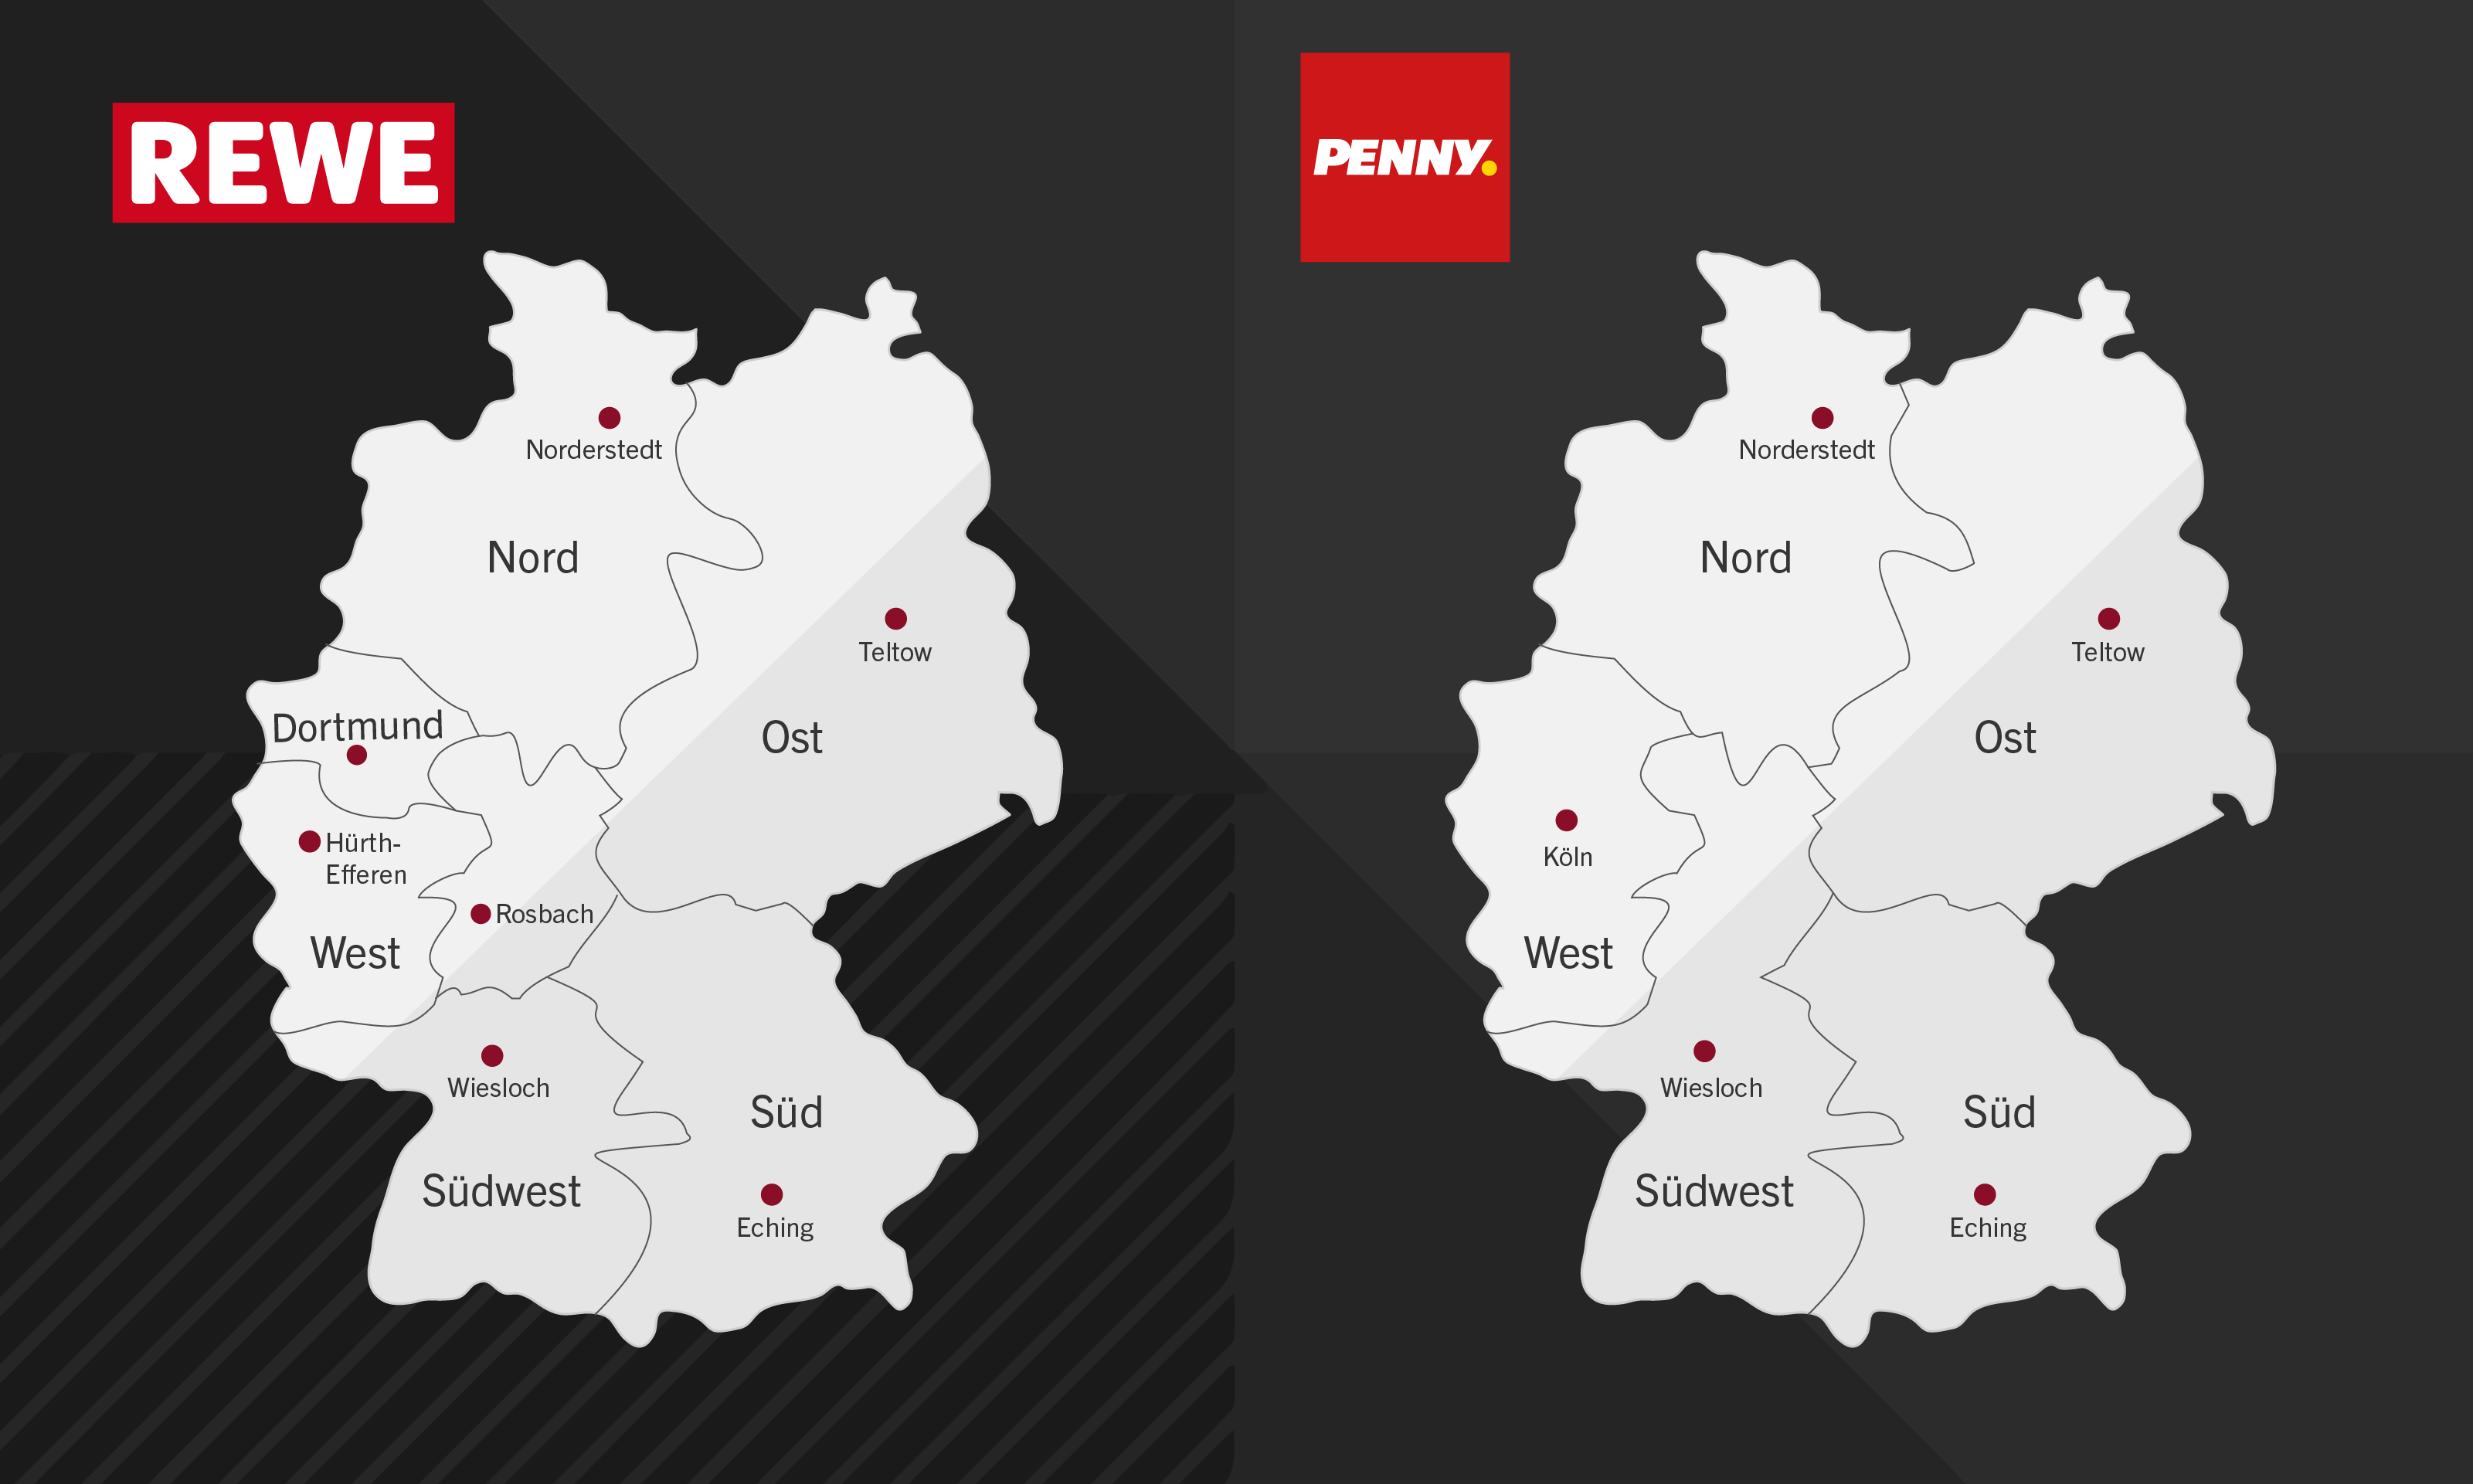 Eine Infografik auf der zwei Deutschlandkarten eingezeichnet sind. Links befinden sich die sieben REWE Regionen, rechts die fünf PENNY Regionen